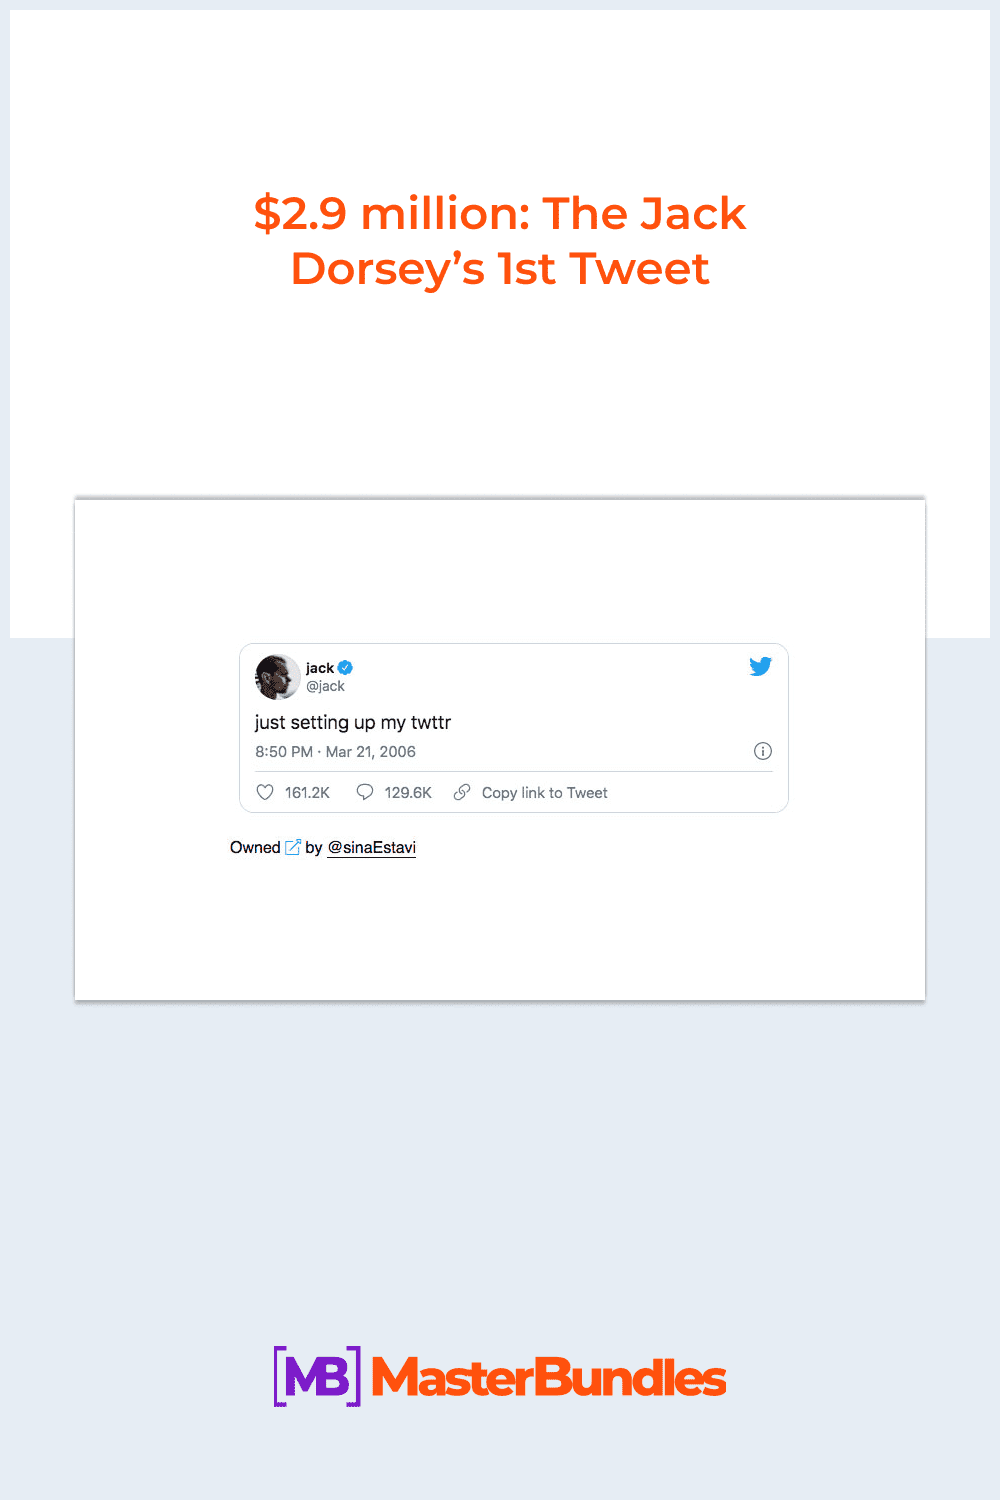 The Jack Dorsey’s 1st Tweet.